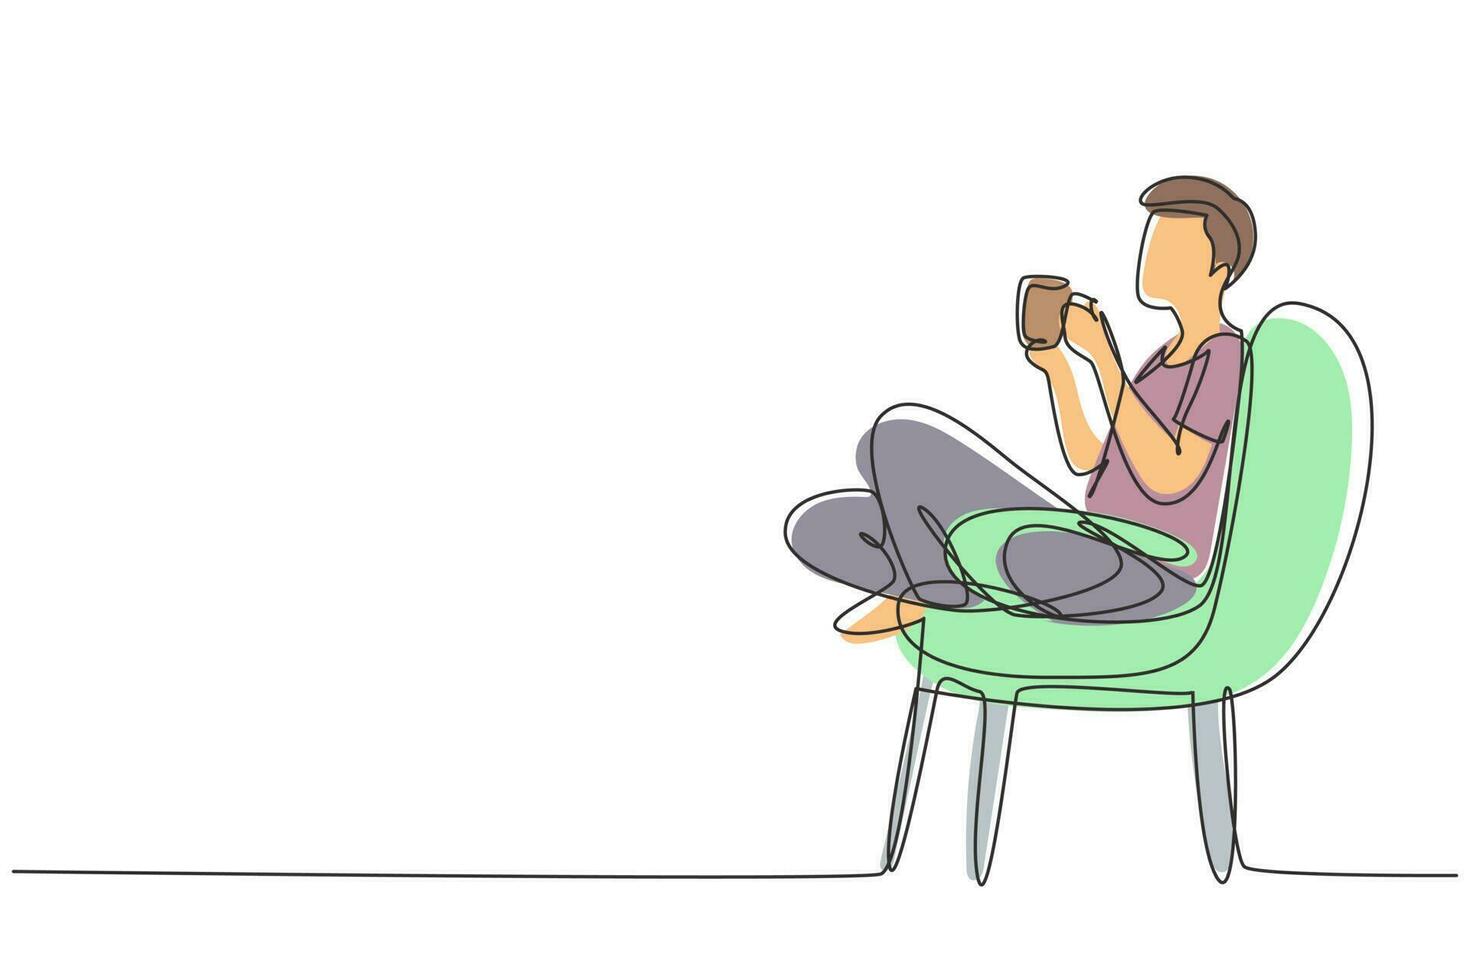 enda kontinuerlig linjeritning tetid. avslappnad stilig pojke som sitter i modern stol, njuter av varmt kaffe framför fönstret, sidovy, ledigt utrymme. en rad rita grafisk design vektorillustration vektor